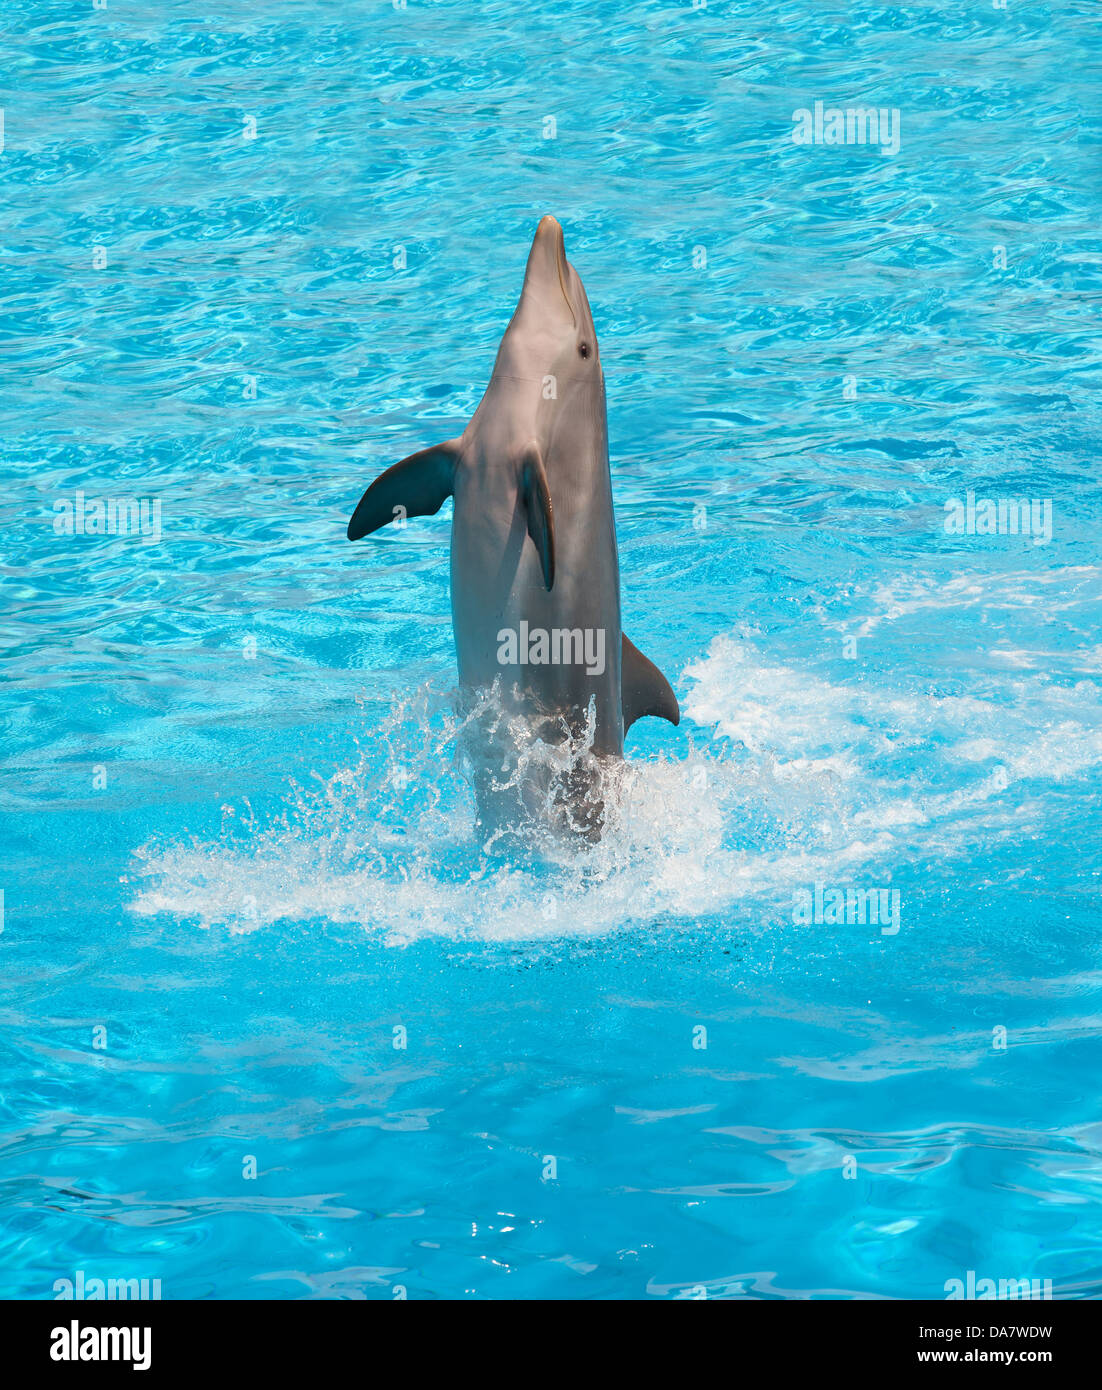 Saut de dauphins dans la piscine au cours de show acrobatique Banque D'Images